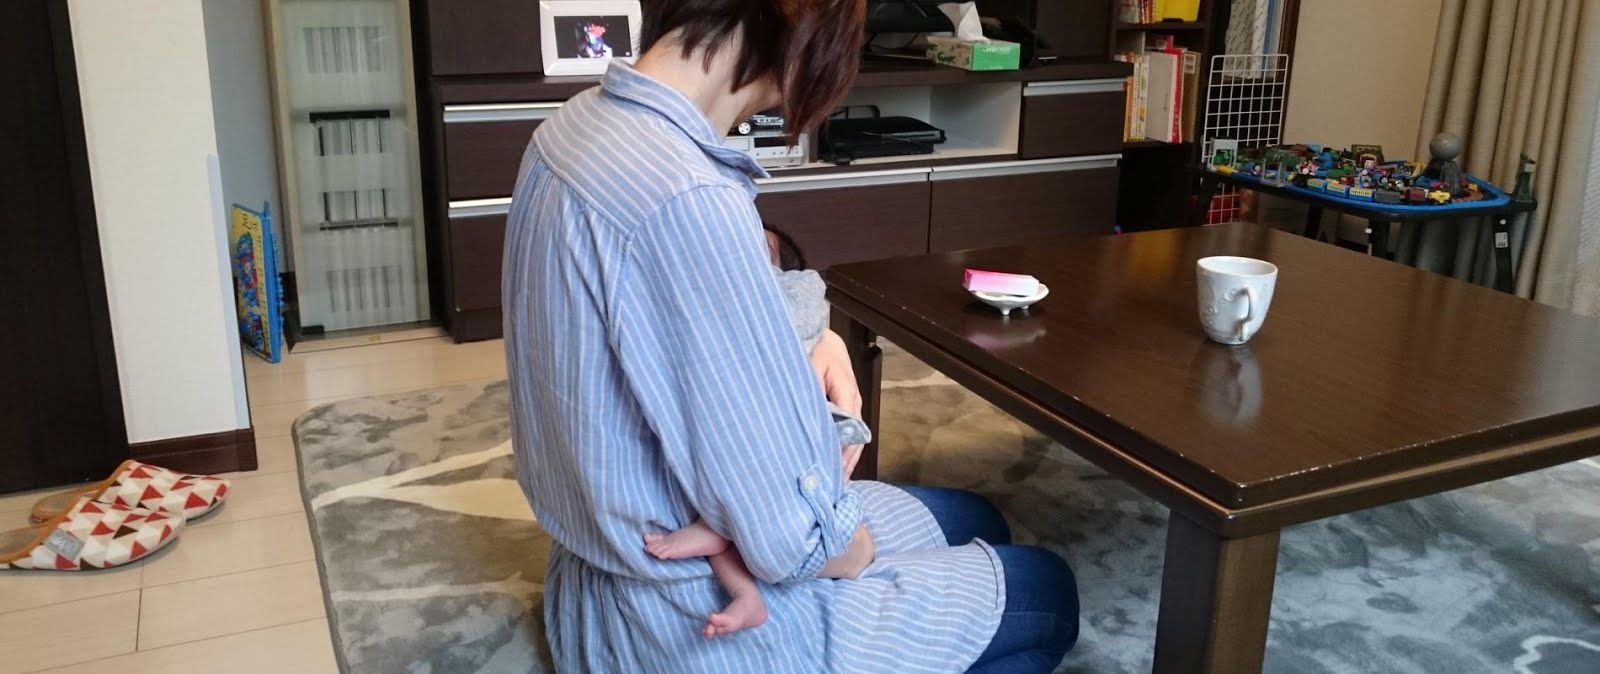 Au Japon, des entreprises imposent des “calendriers de grossesse” à leurs salariées